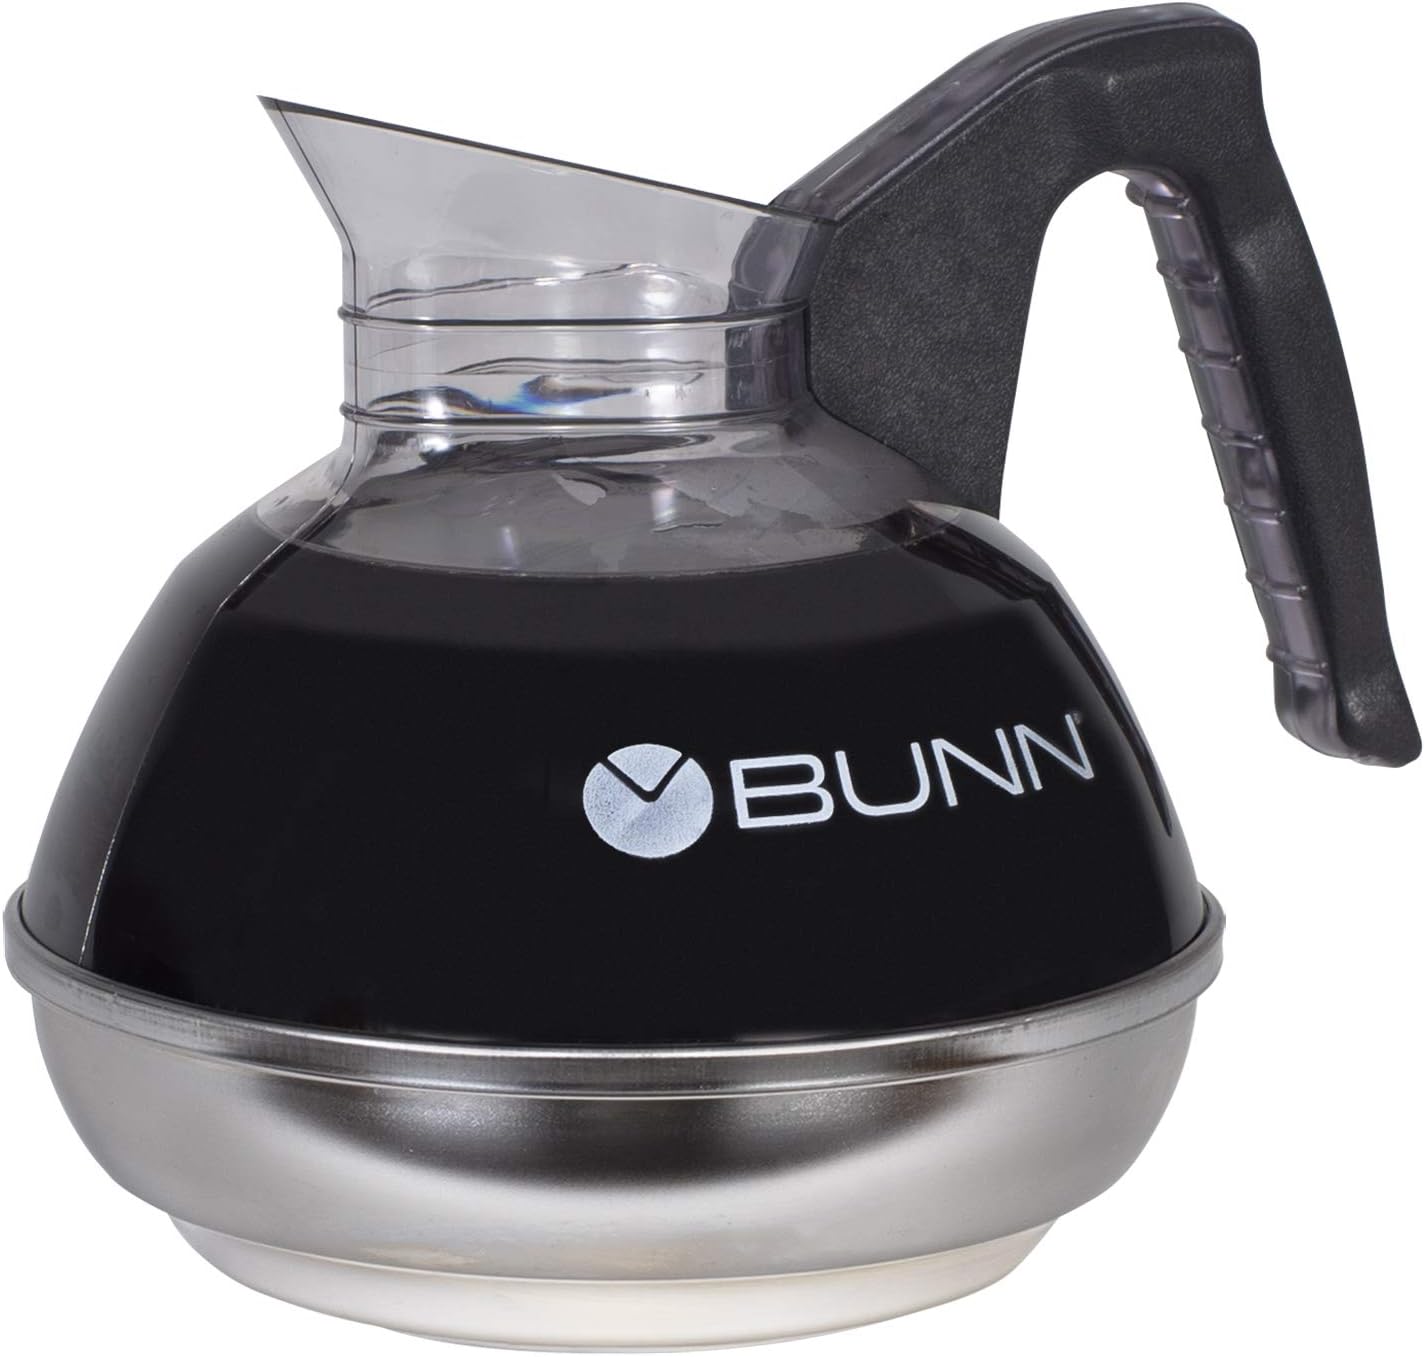 Bunn Axiom Dv-3 Coffee Maker Review